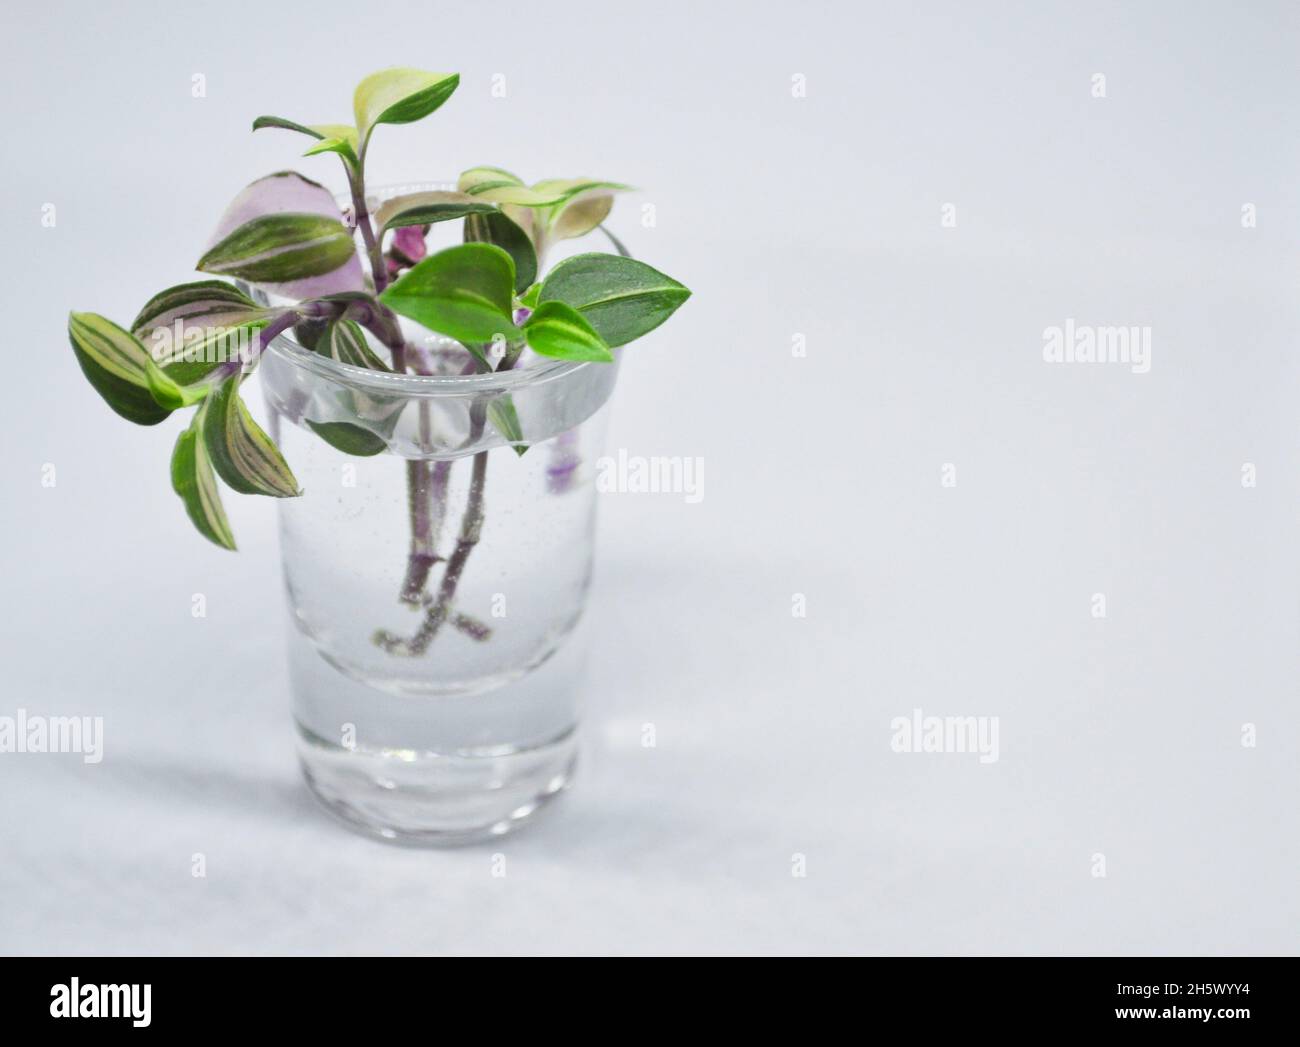 Tradescantia Albiflora tricolor plantes boutures assis dans un verre d'eau, en attendant que les racines se forment - sur fond blanc avec espace de copie Banque D'Images